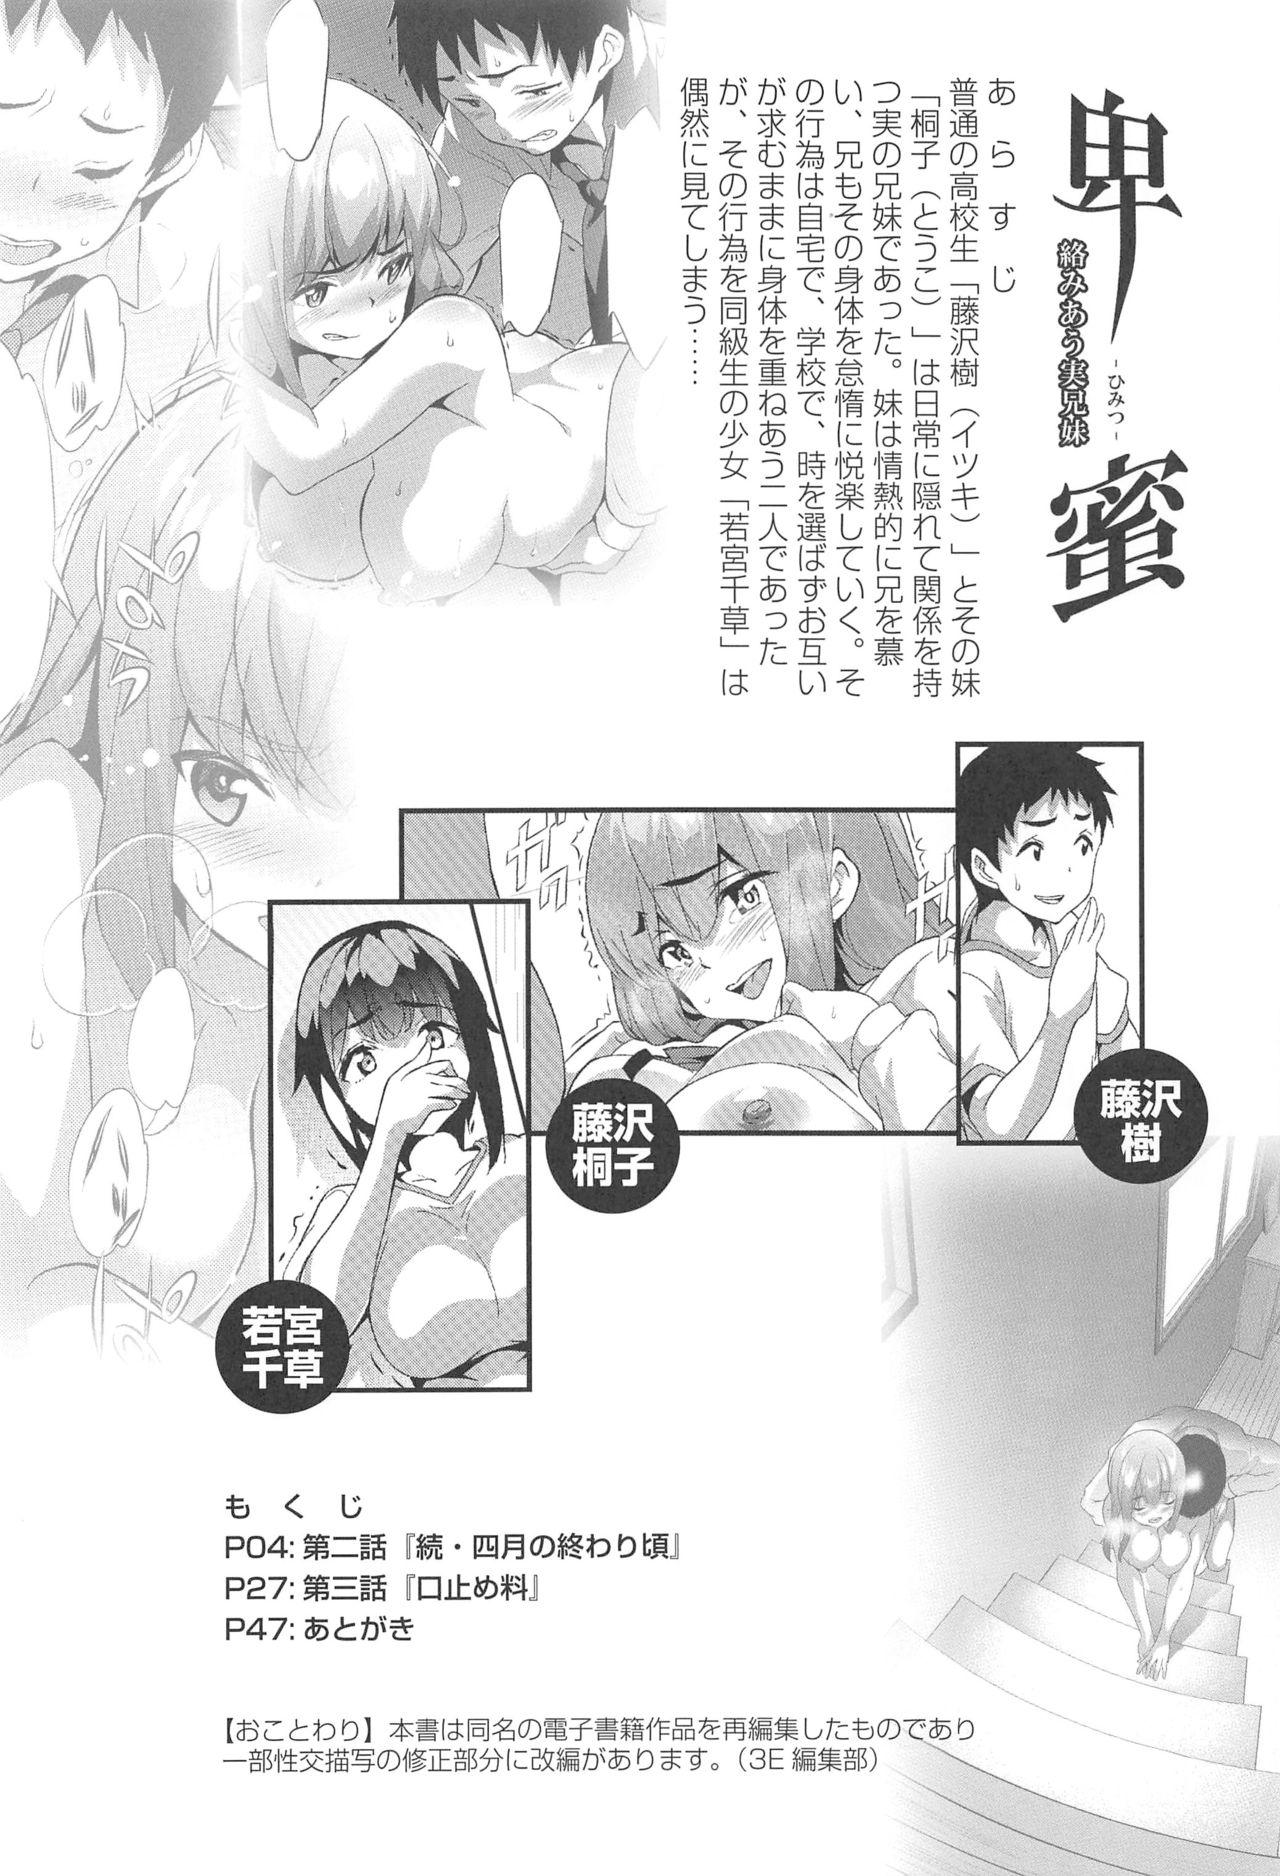 Hot Himitsu 2 & 3 "Zoku 4-gatsu no Owarigoro" "Kuchidomeryou" - Original Eurobabe - Page 3